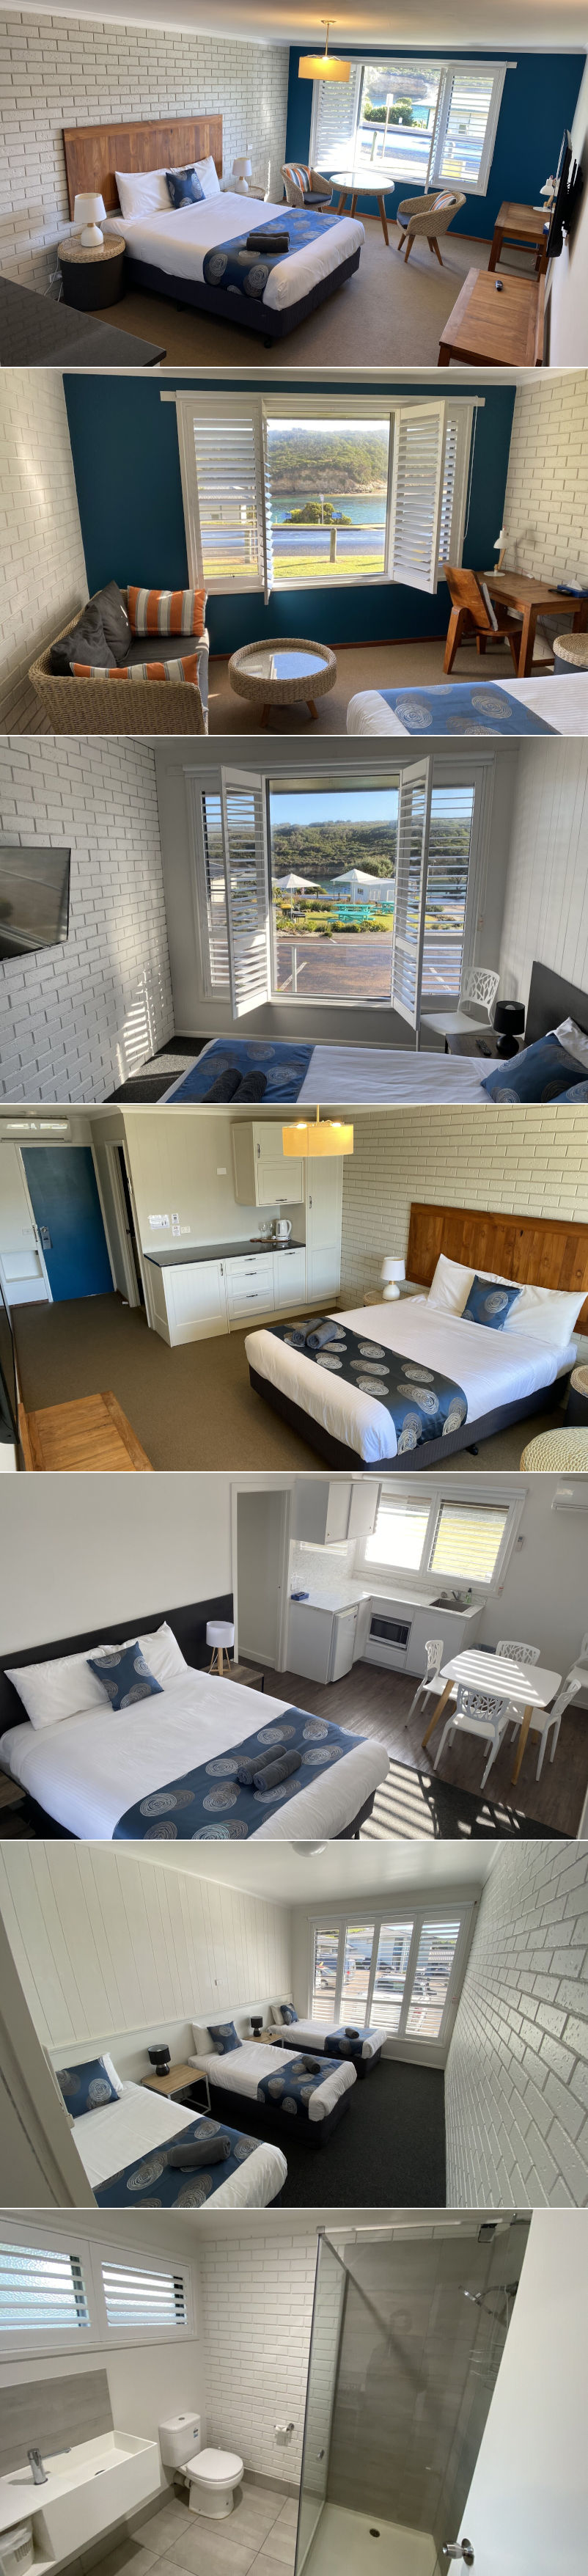 Southern Ocean Motor Inn - Rooms